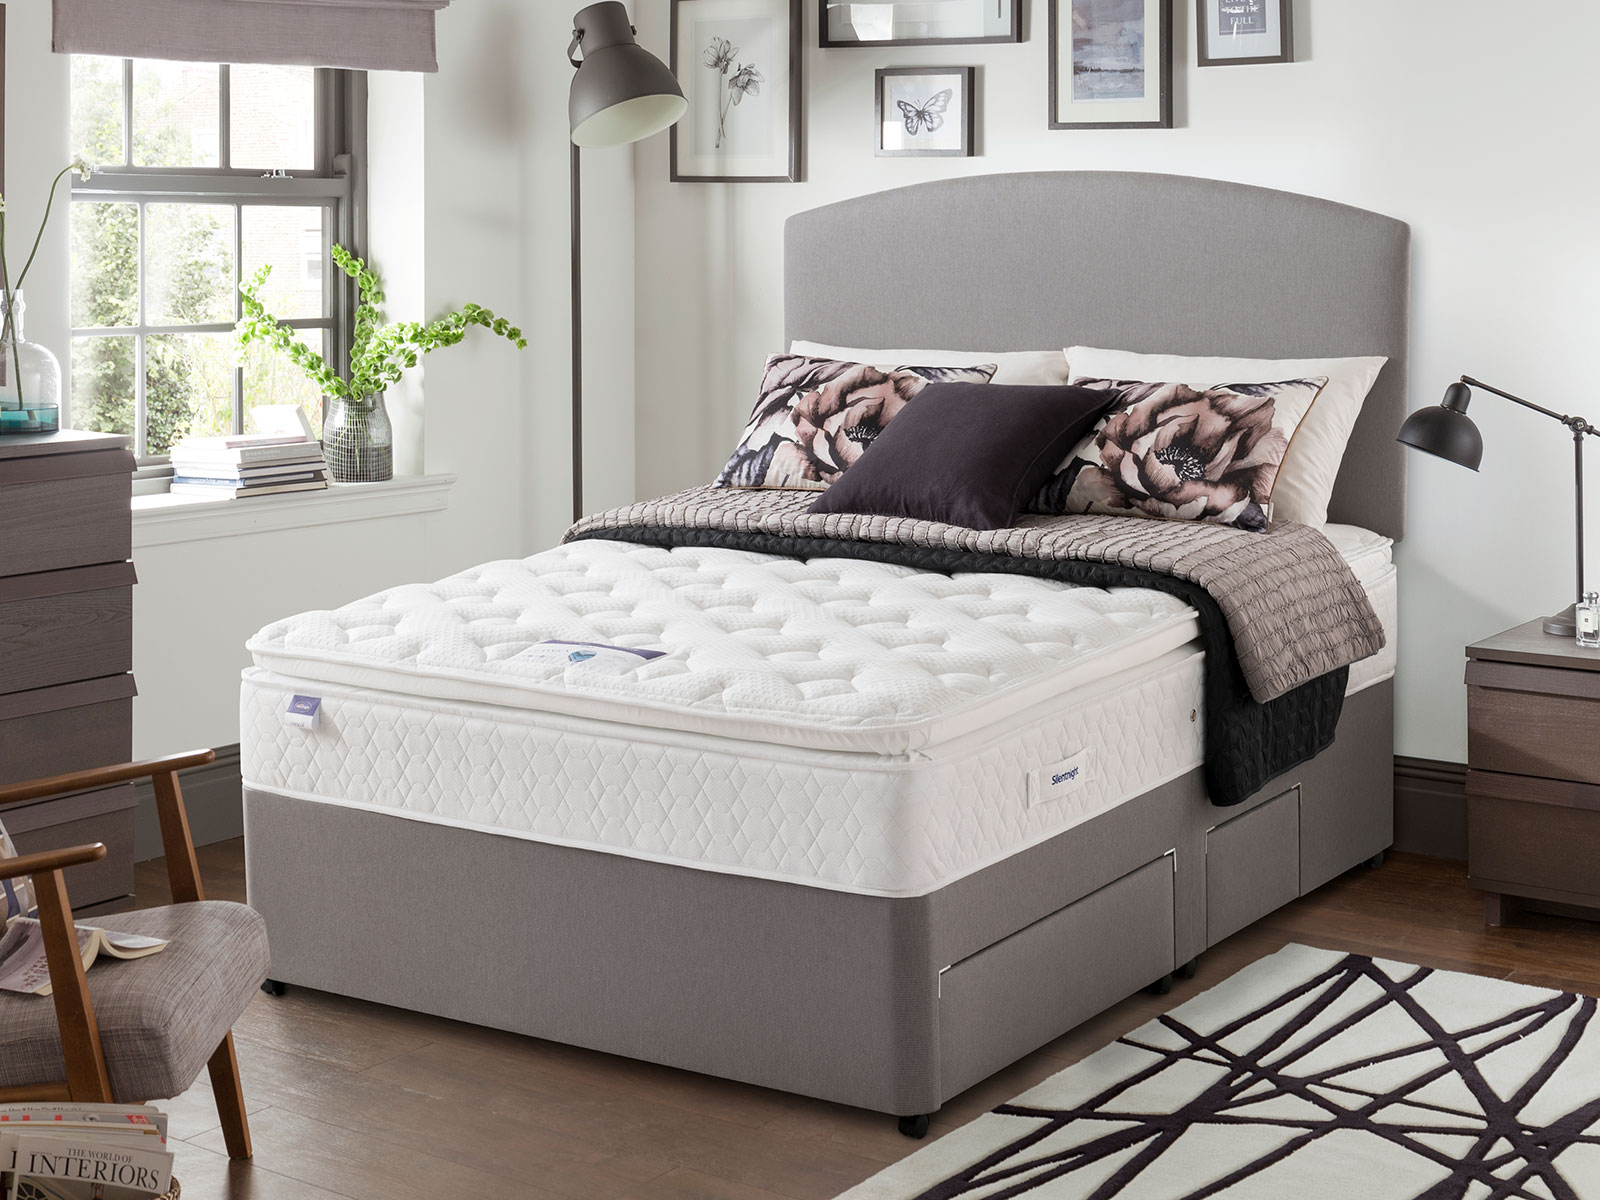 dual pillow top mattress sets full